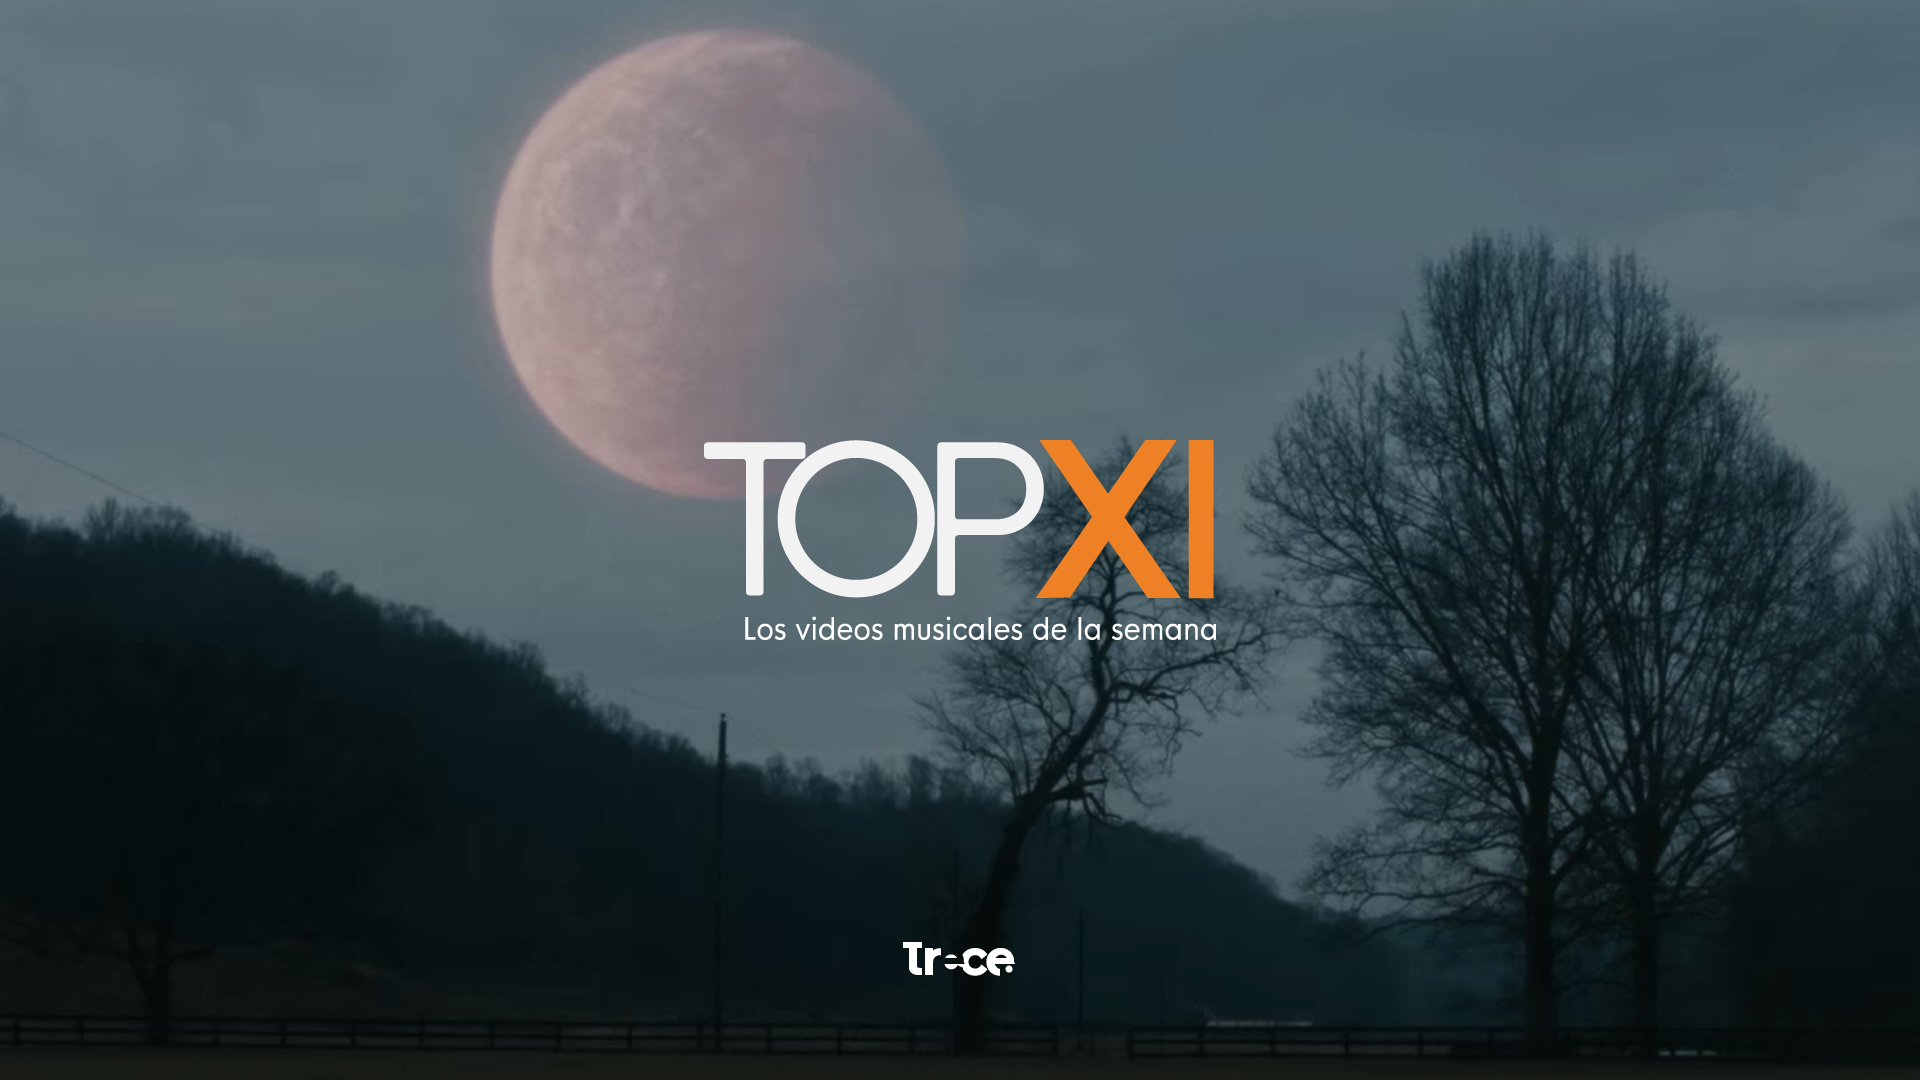 El TOPXI, una selección de videos musicales cada semana en Canal Trece. 